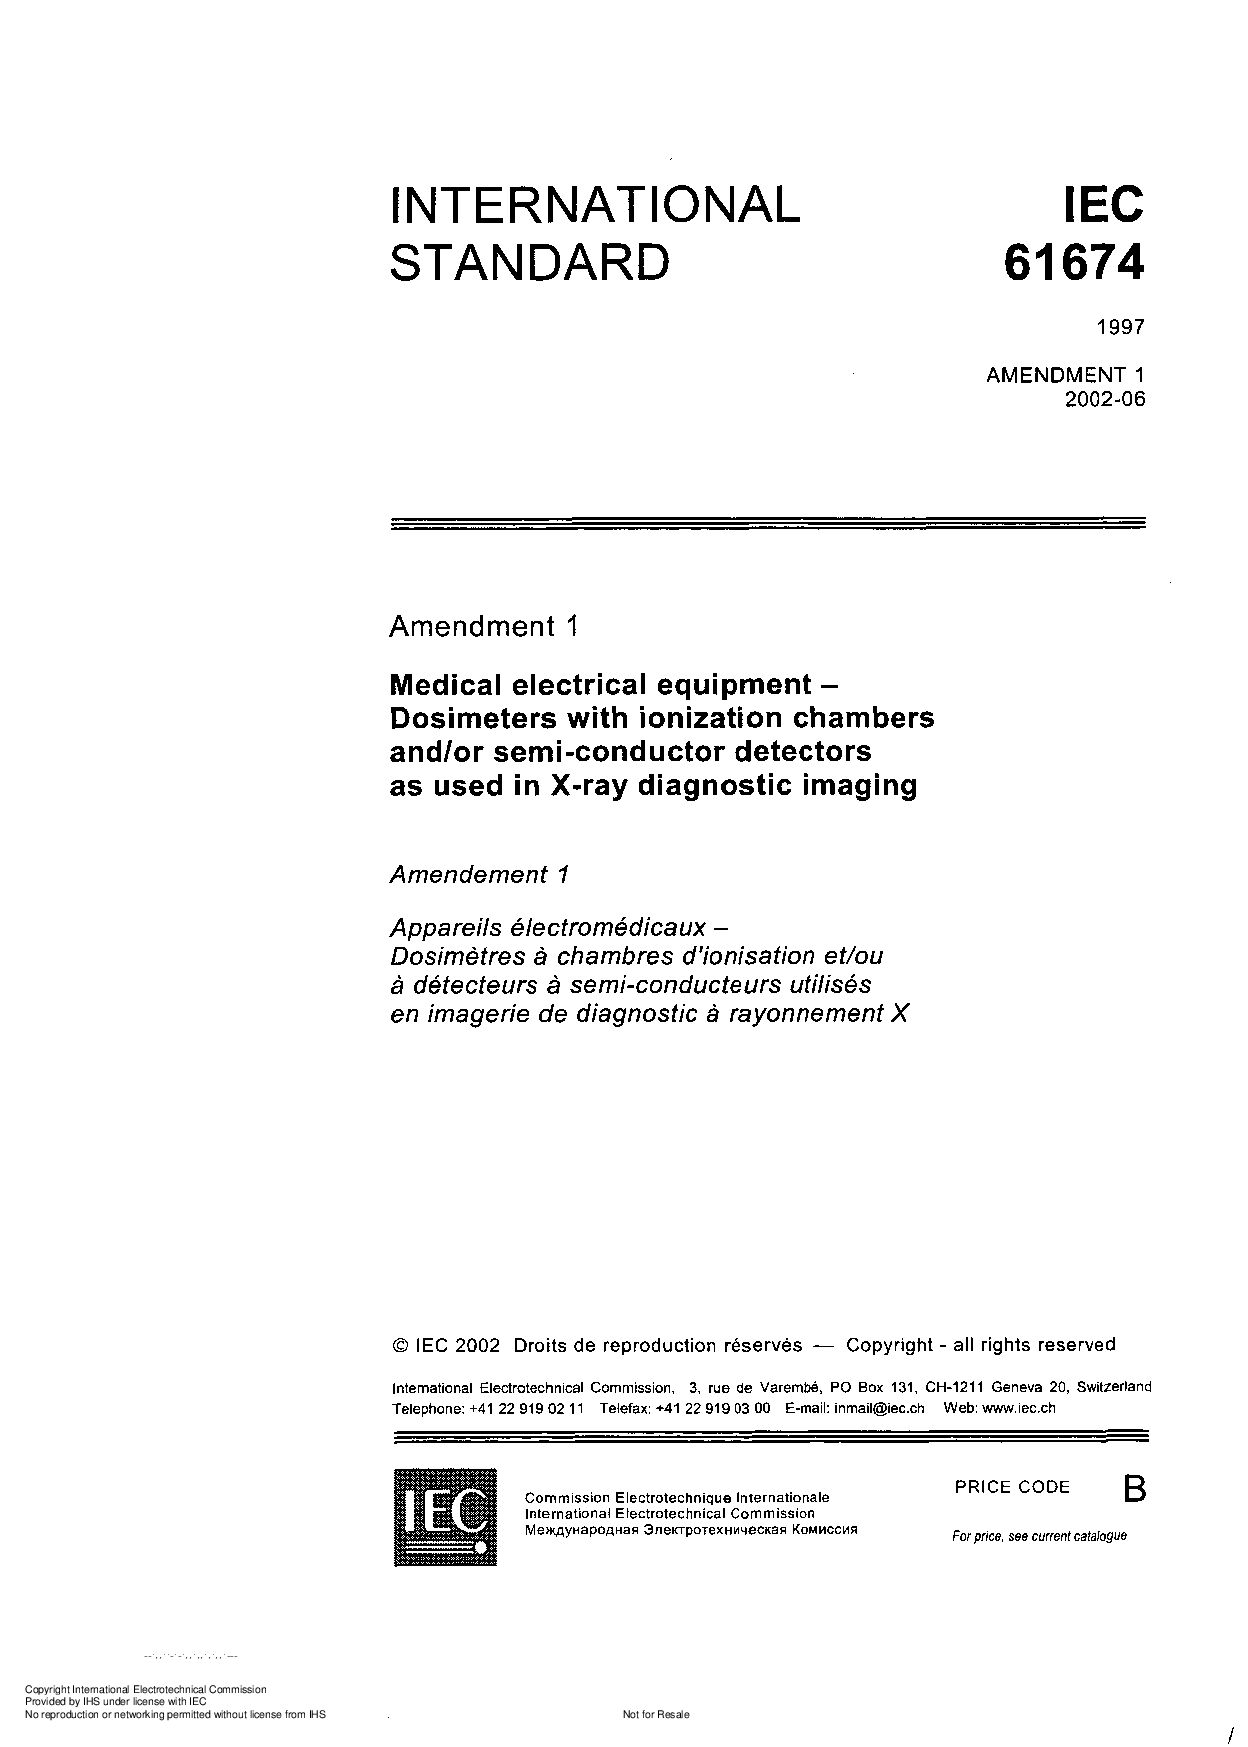 IEC 61674:1997封面图